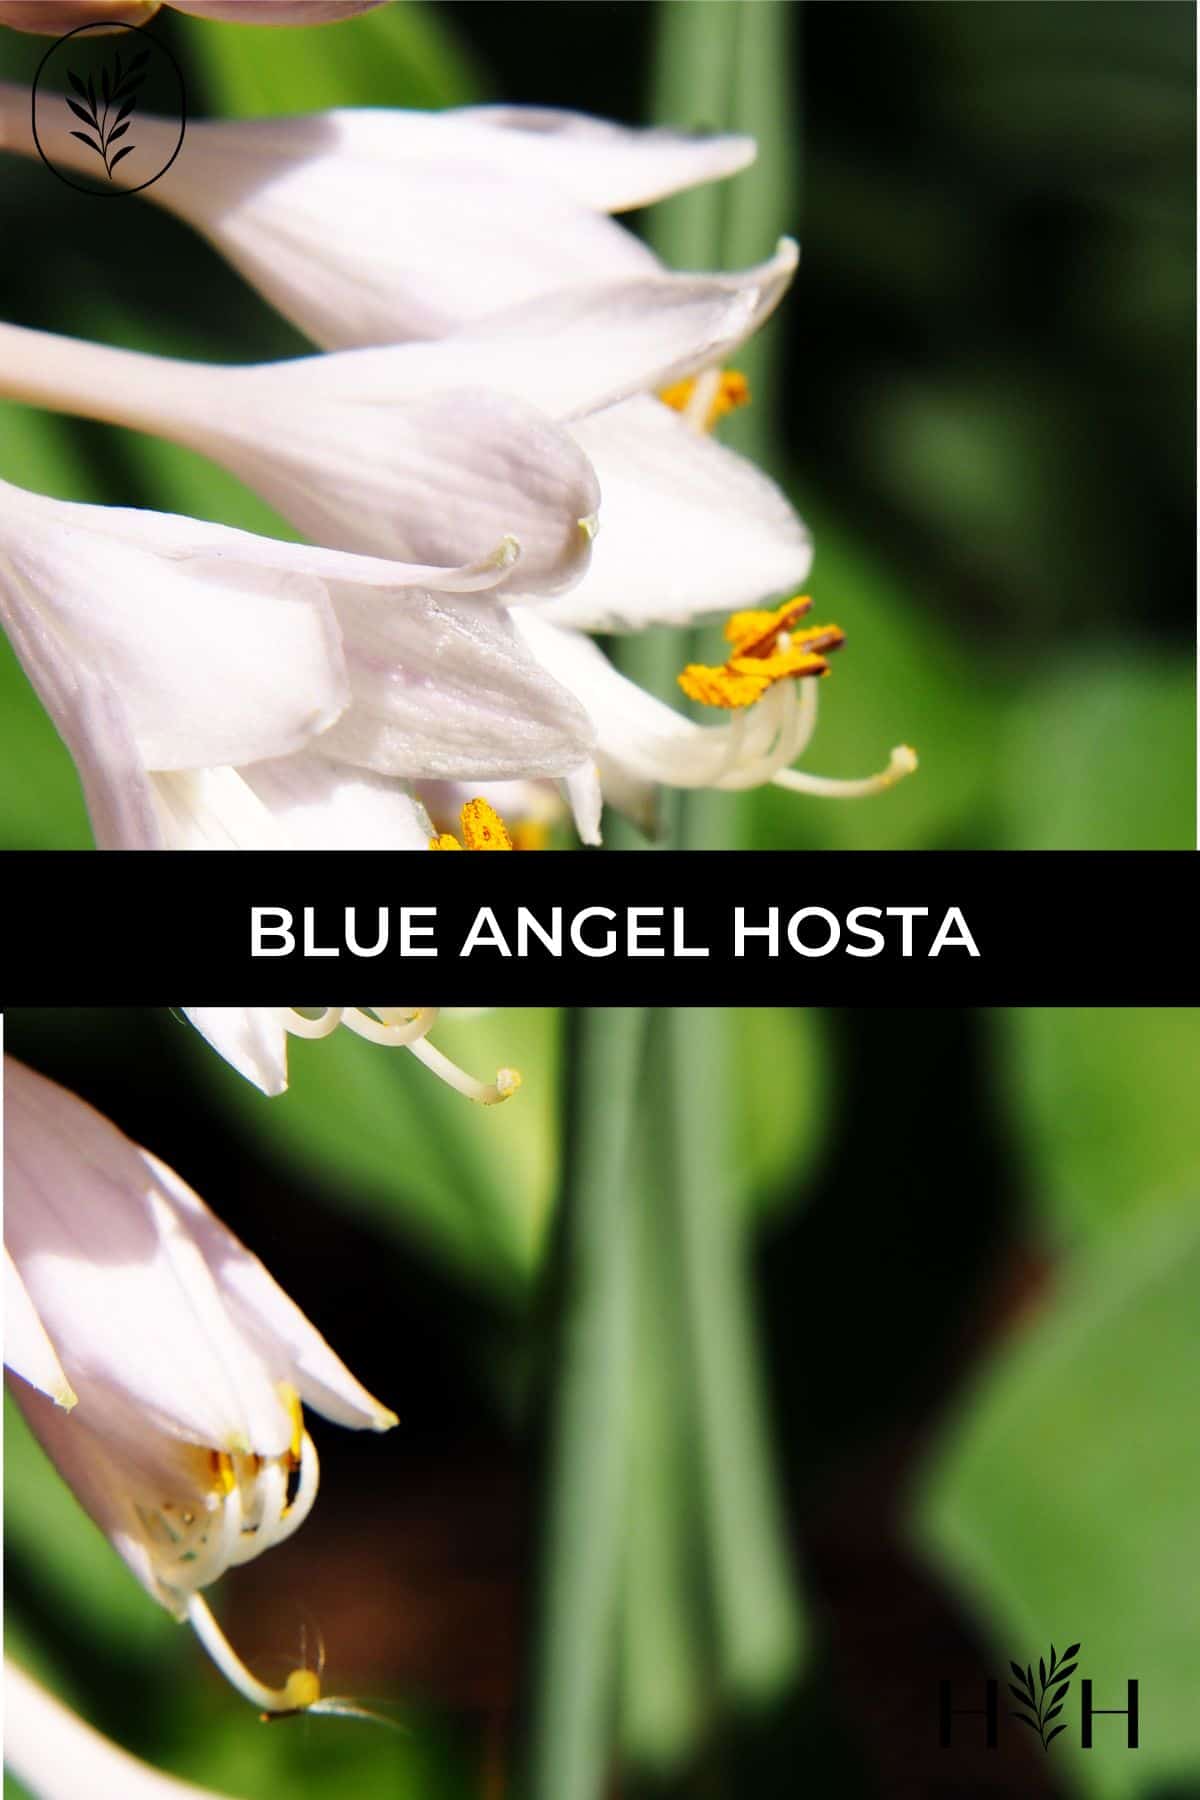 Blue angel hosta via @home4theharvest